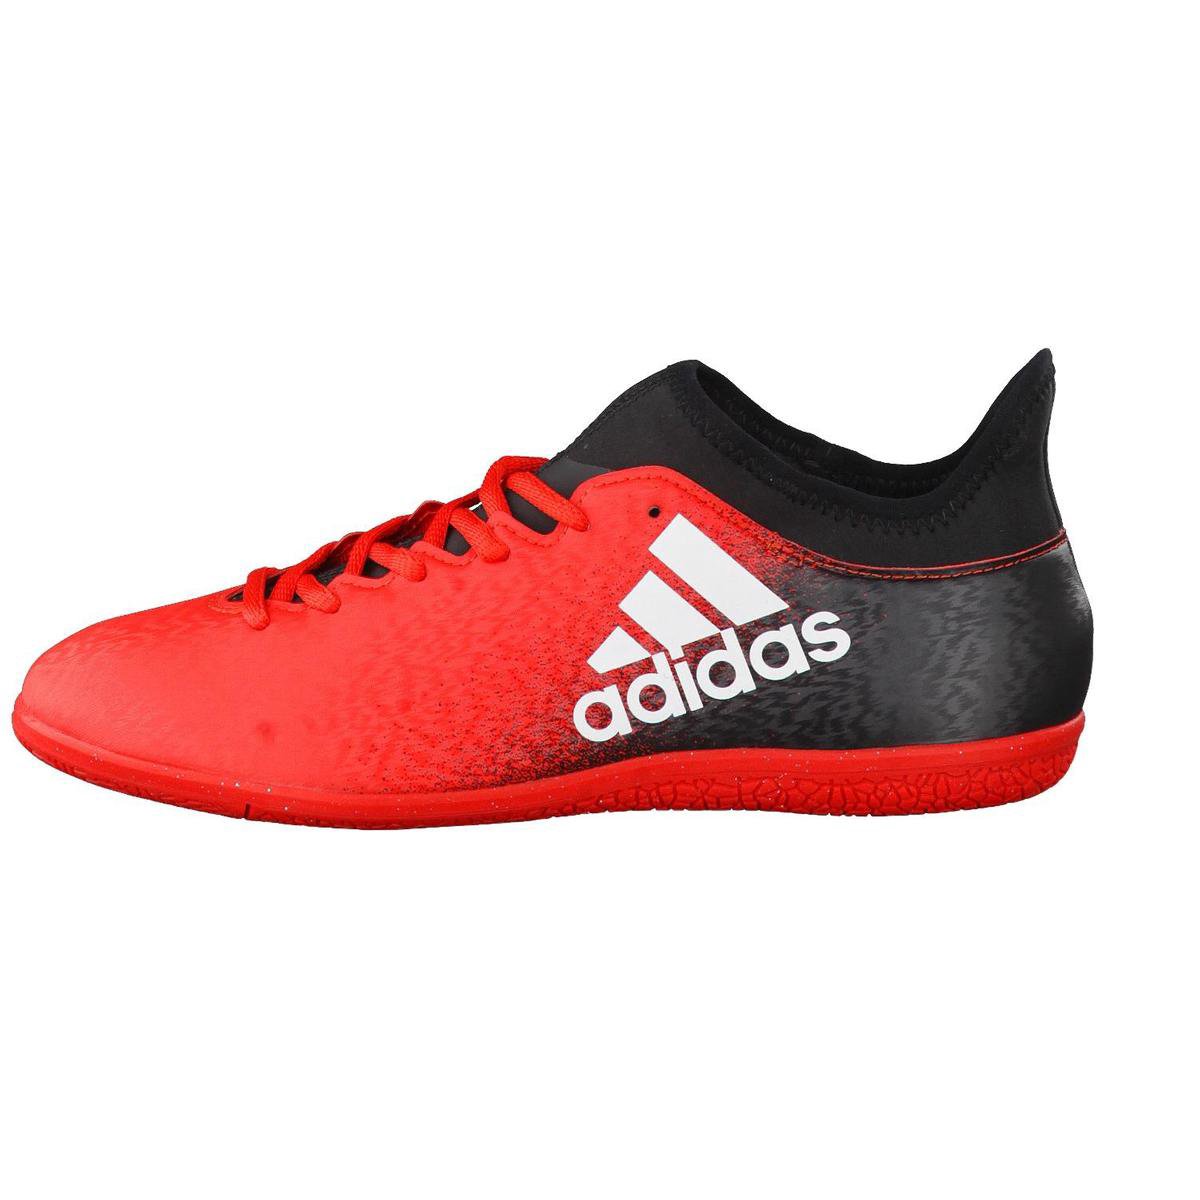 adidas - X 16.3 Indoor - Indoorschoen - Rood/Zwart - maat 46 | bol.com